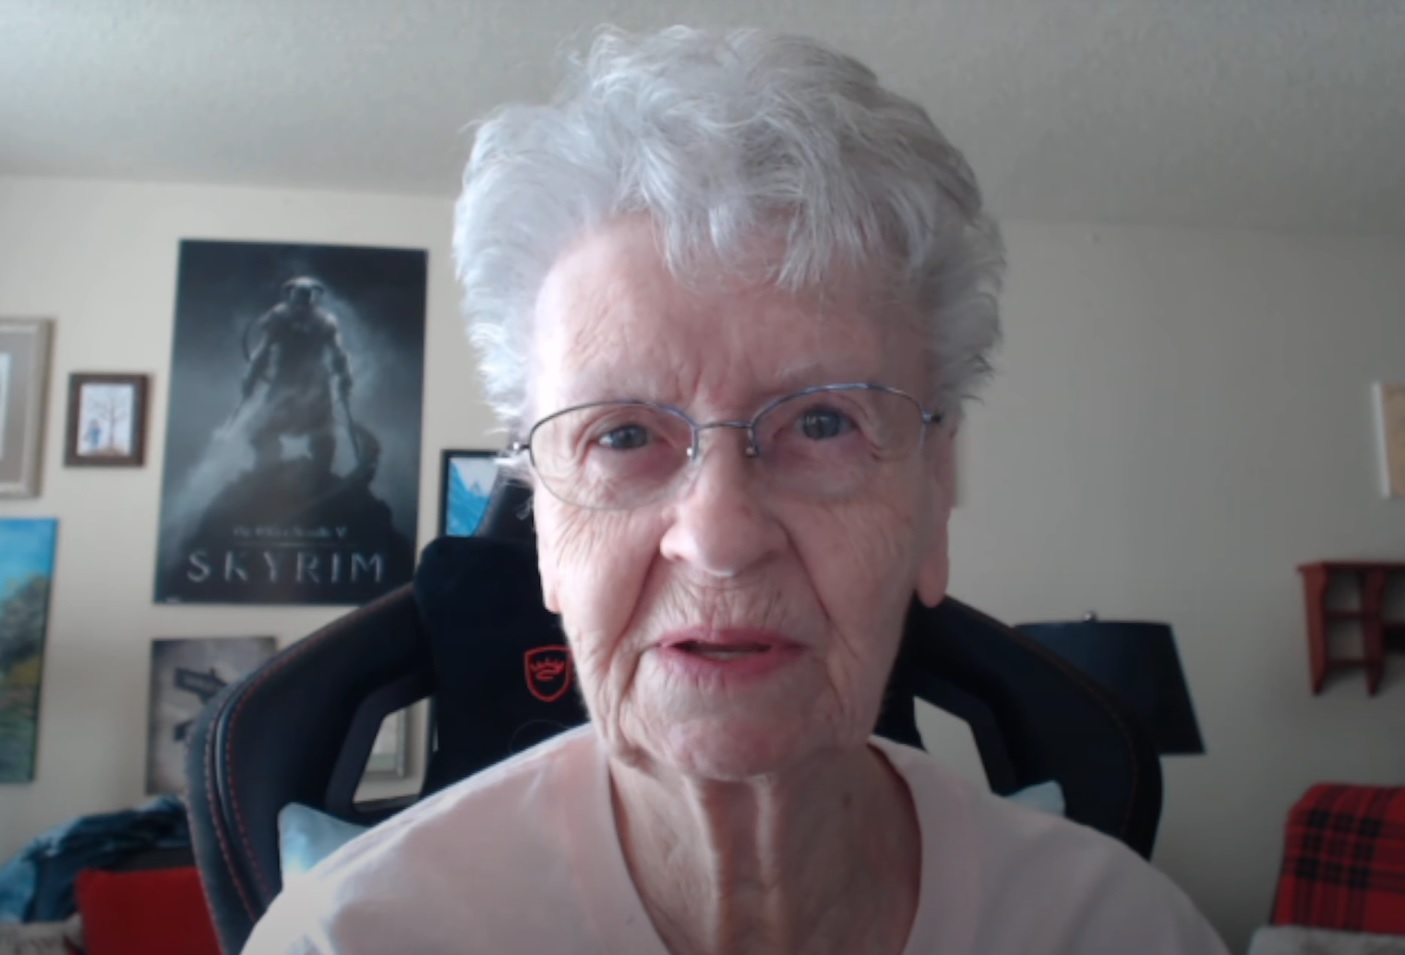 Starfield Skyrim Grandma : Une YouTubeuse, Shirley Curry, également connue sous le nom de Skyrim Grandma, parle devant la caméra